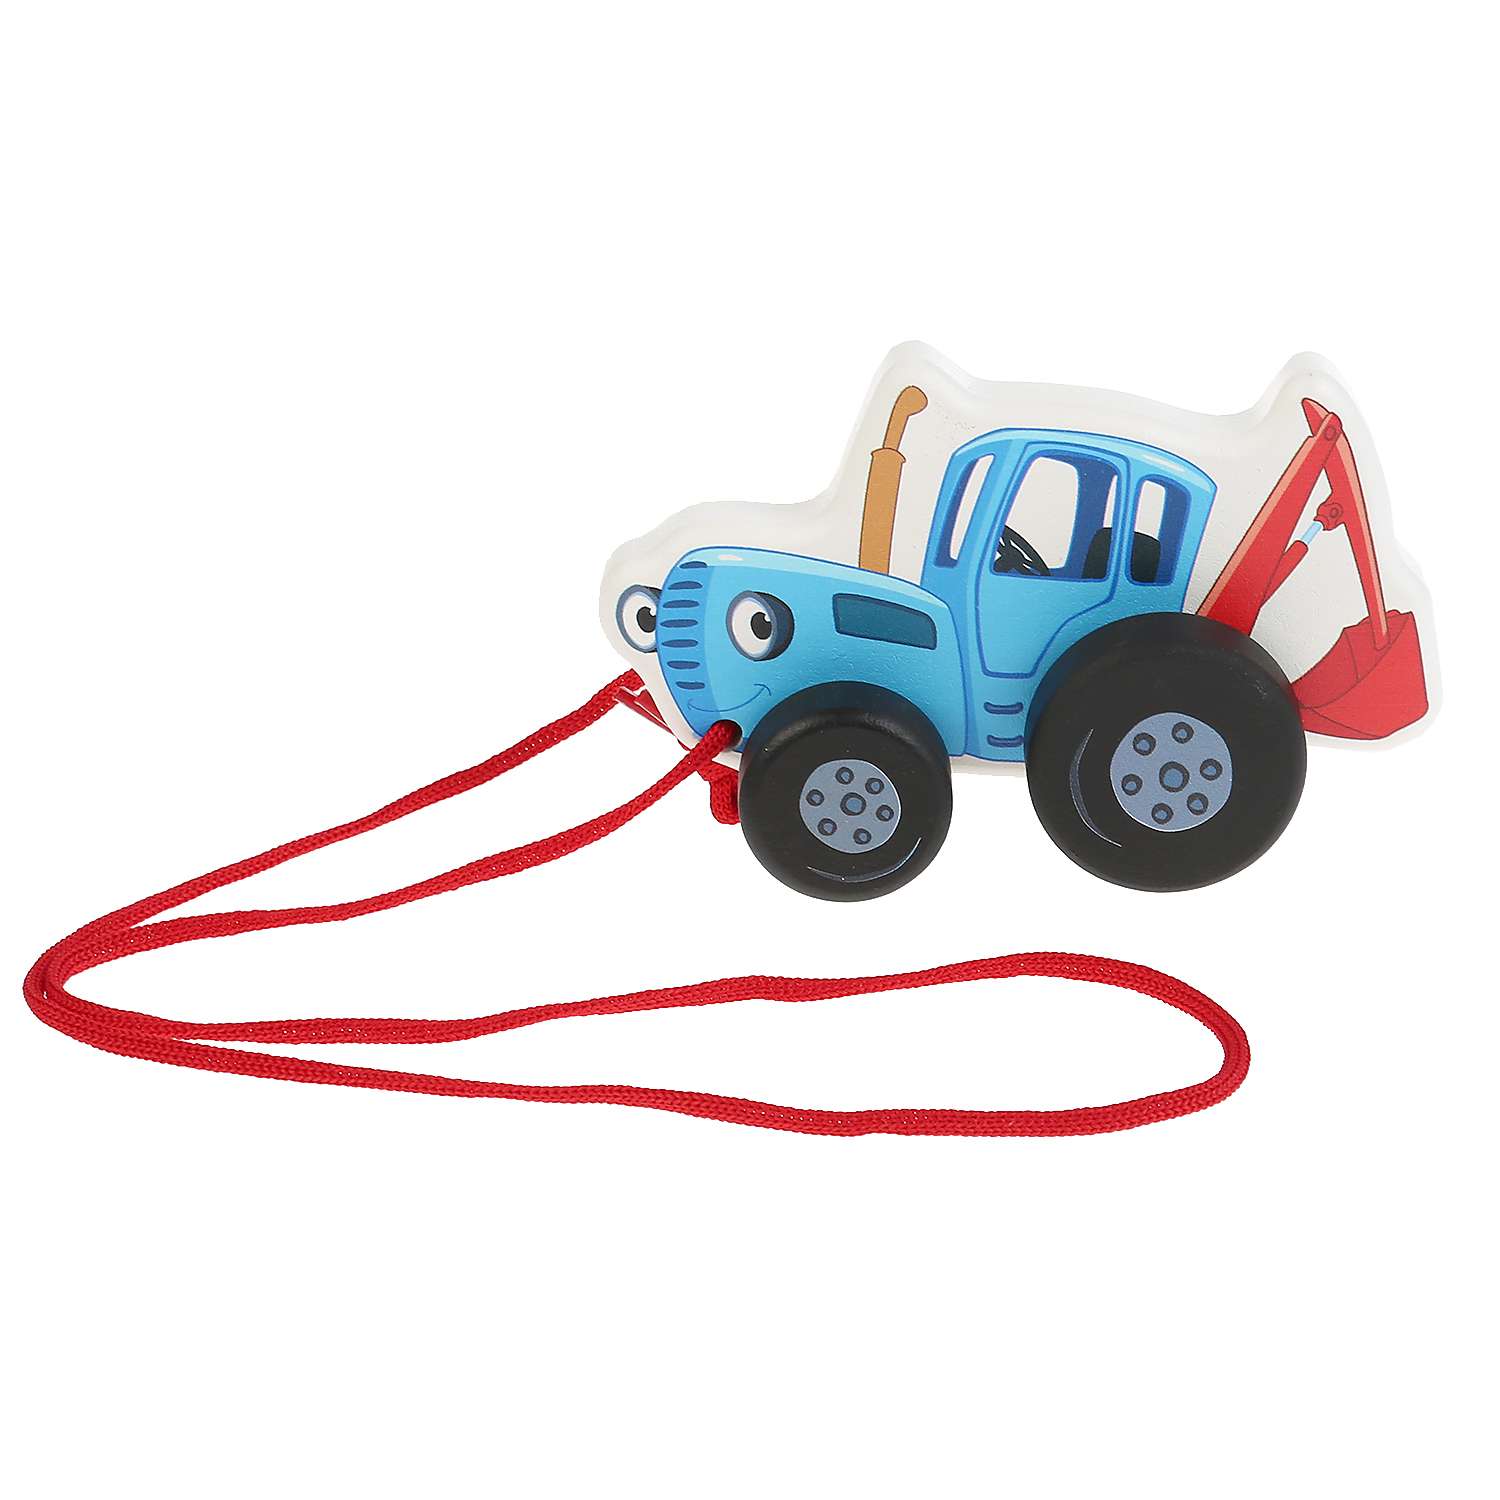 Игрушка-каталка Буратино Синий Трактор 12 см пакет с хедером 295605 - фото 2